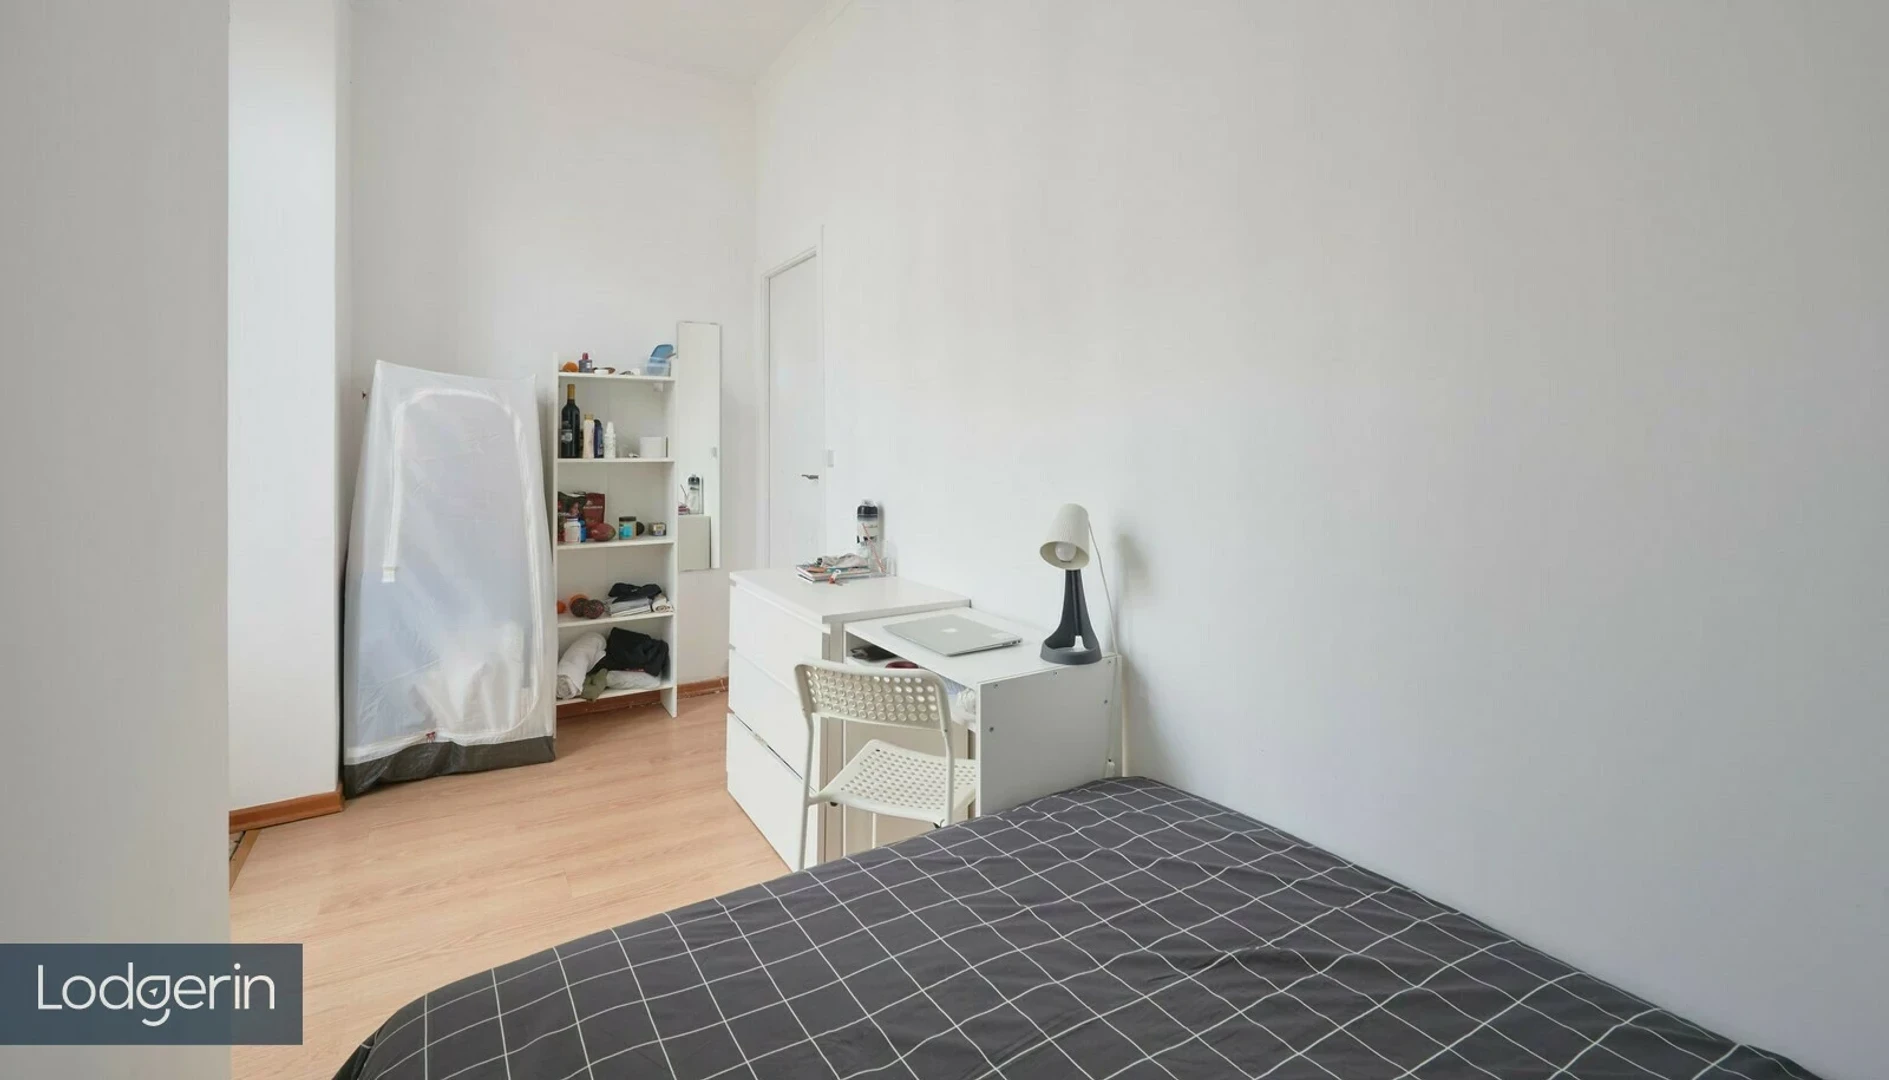 Stanza in condivisione in un appartamento di 3 camere da letto Lisbona